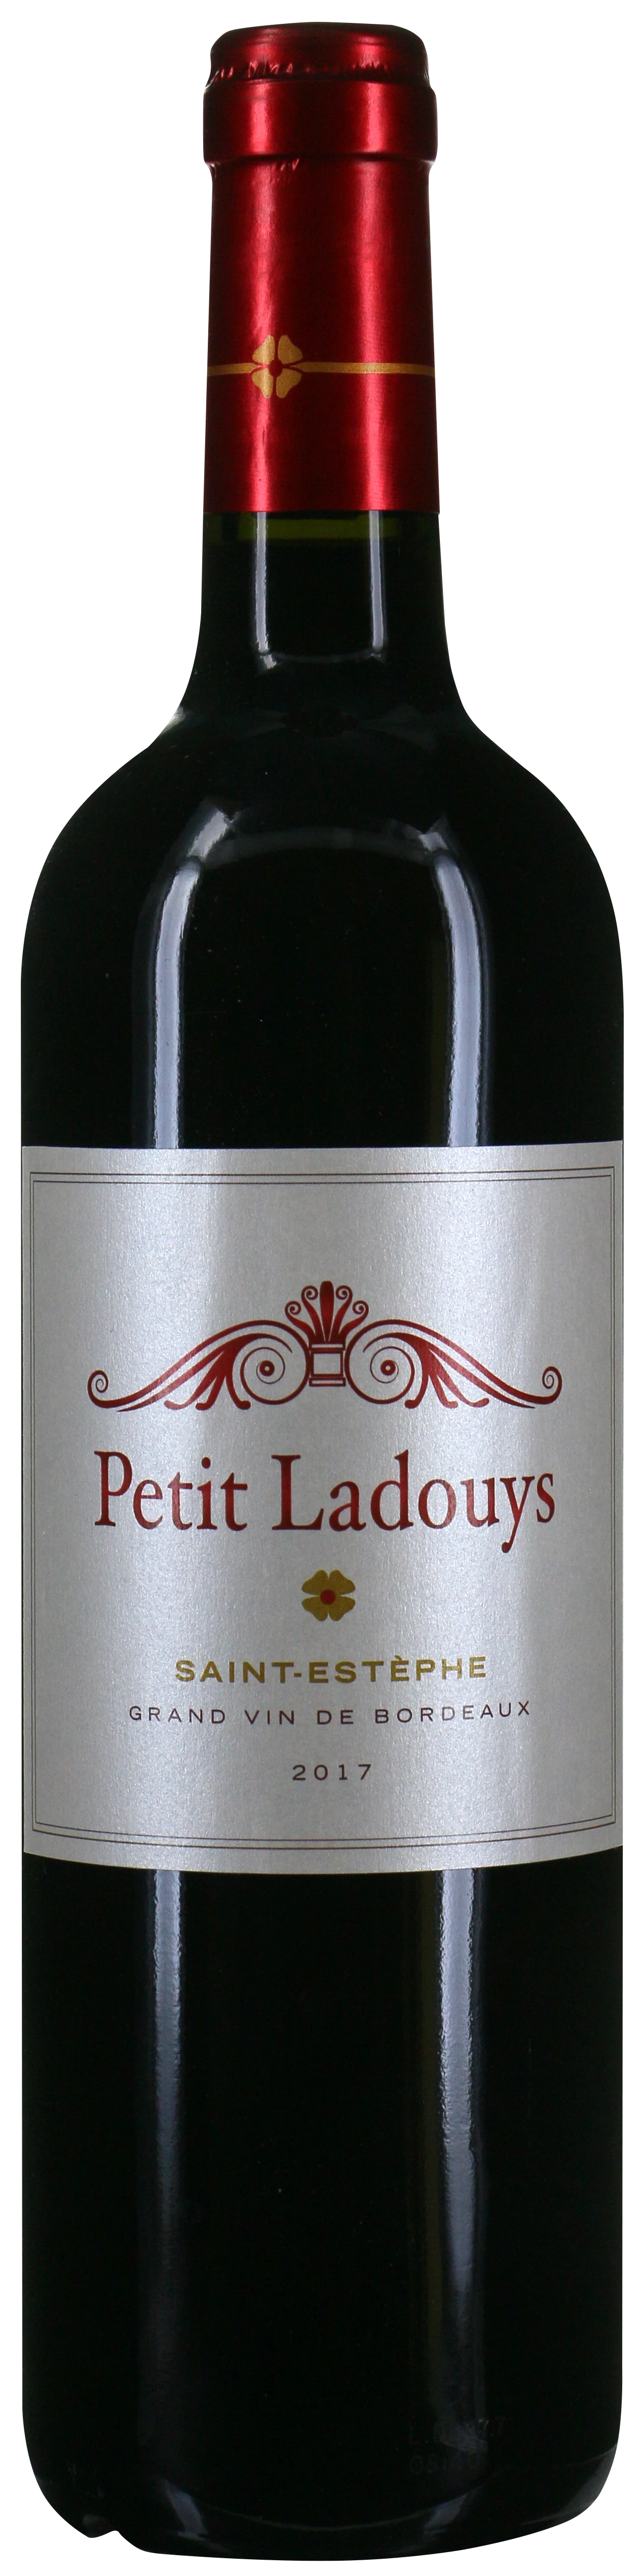 Vin Rouge de Bordeaux Saint-Estèphe 2017 13% 75cl - PETIT LADOUYS